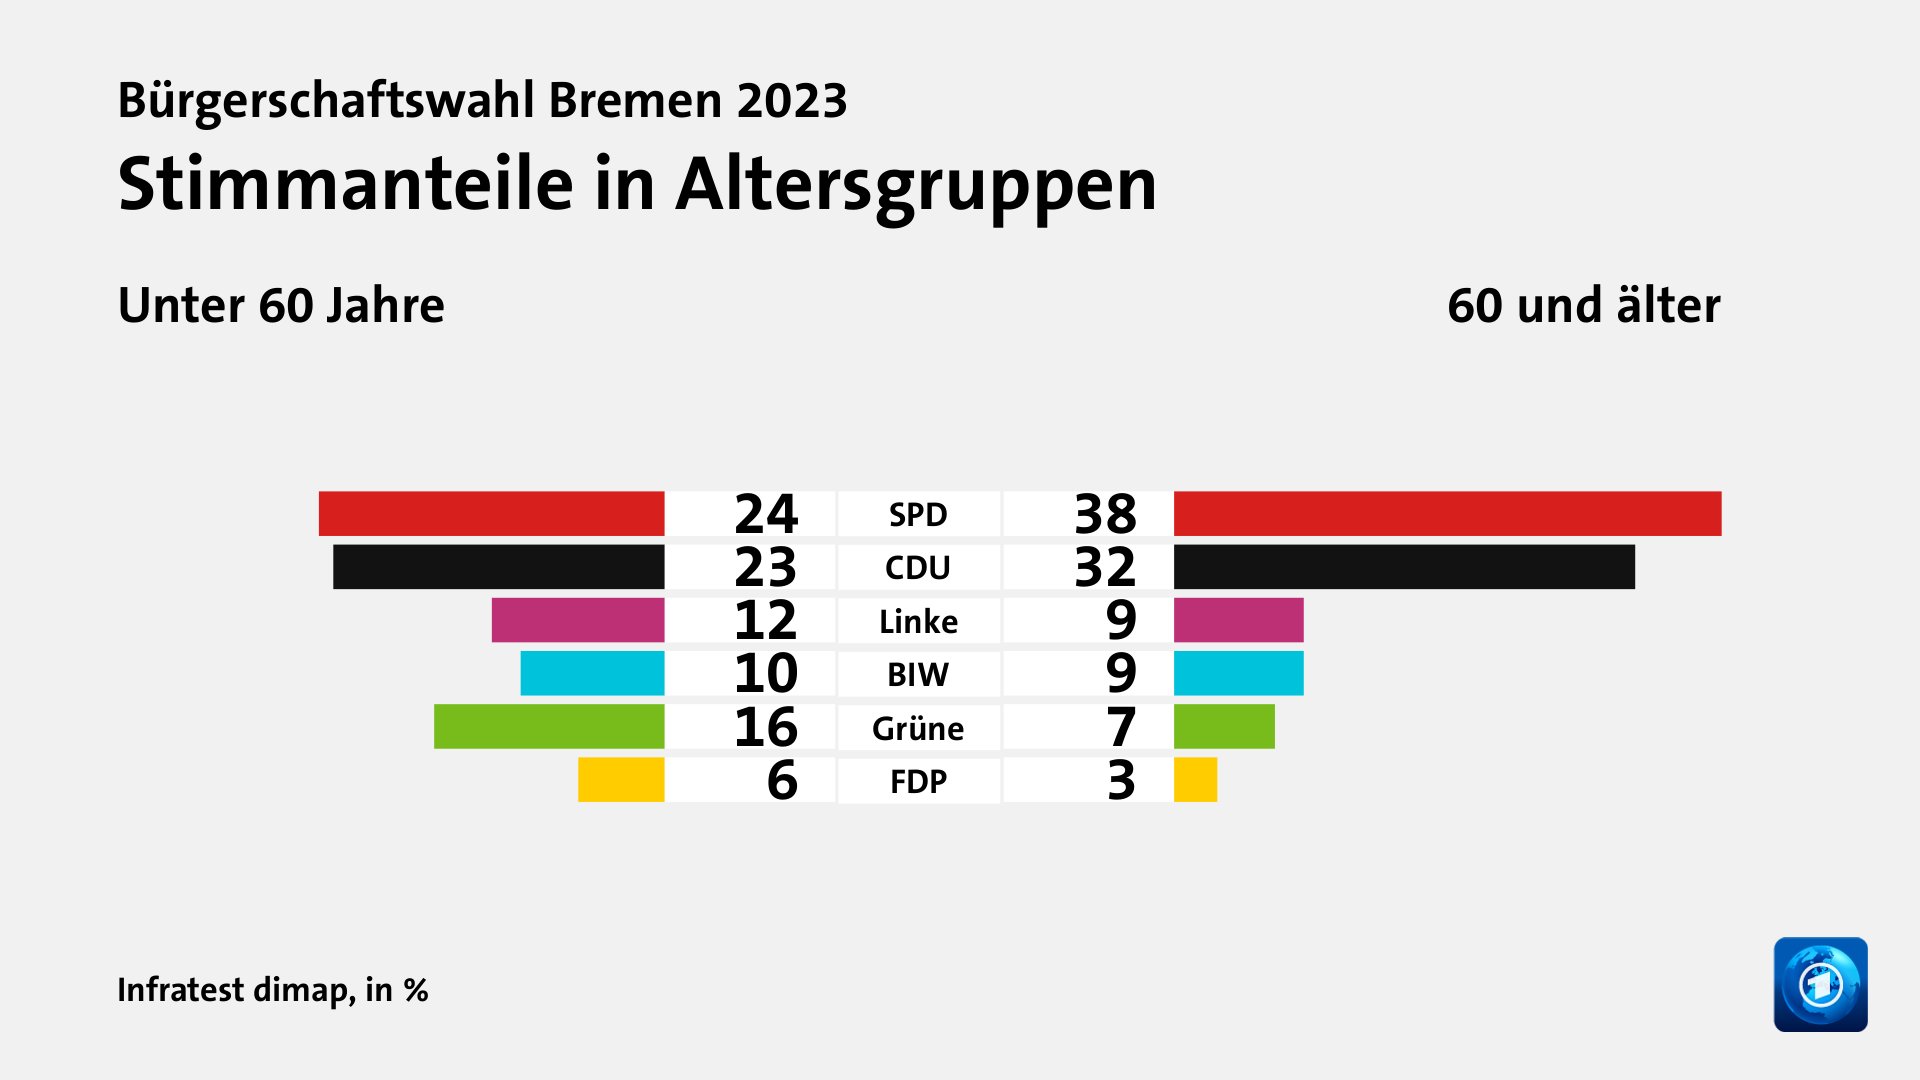 Stimmanteile in Altersgruppen (in %) SPD: Unter 60 Jahre 24, 60 und älter 38; CDU: Unter 60 Jahre 23, 60 und älter 32; Linke: Unter 60 Jahre 12, 60 und älter 9; BIW: Unter 60 Jahre 10, 60 und älter 9; Grüne: Unter 60 Jahre 16, 60 und älter 7; FDP: Unter 60 Jahre 6, 60 und älter 3; Quelle: Infratest dimap